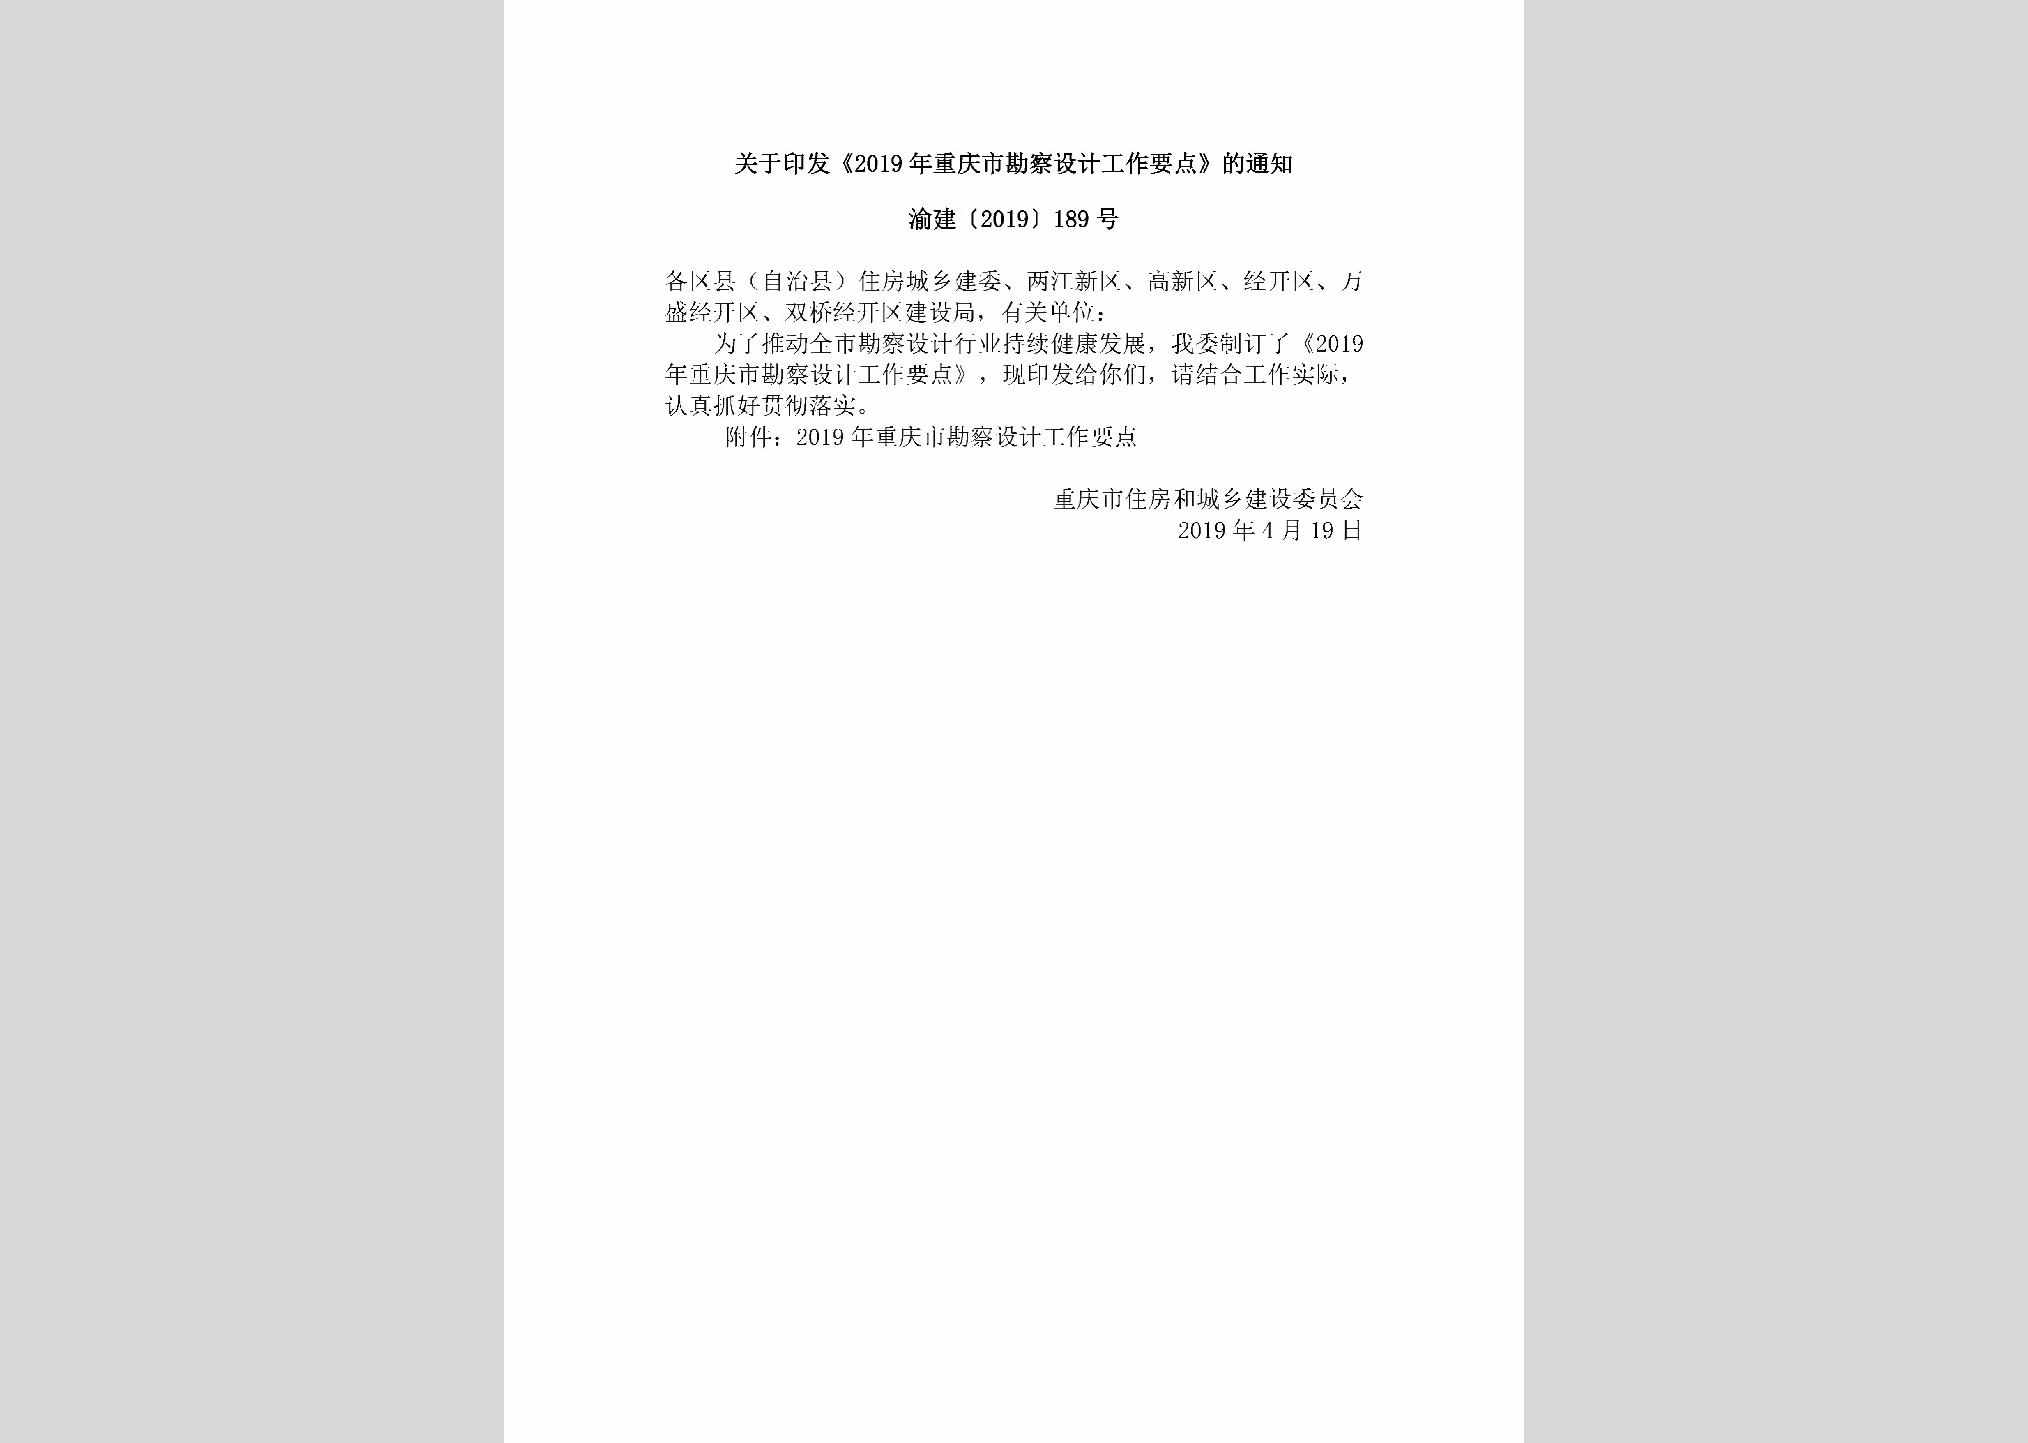 渝建[2019]189号：关于印发《2019年重庆市勘察设计工作要点》的通知